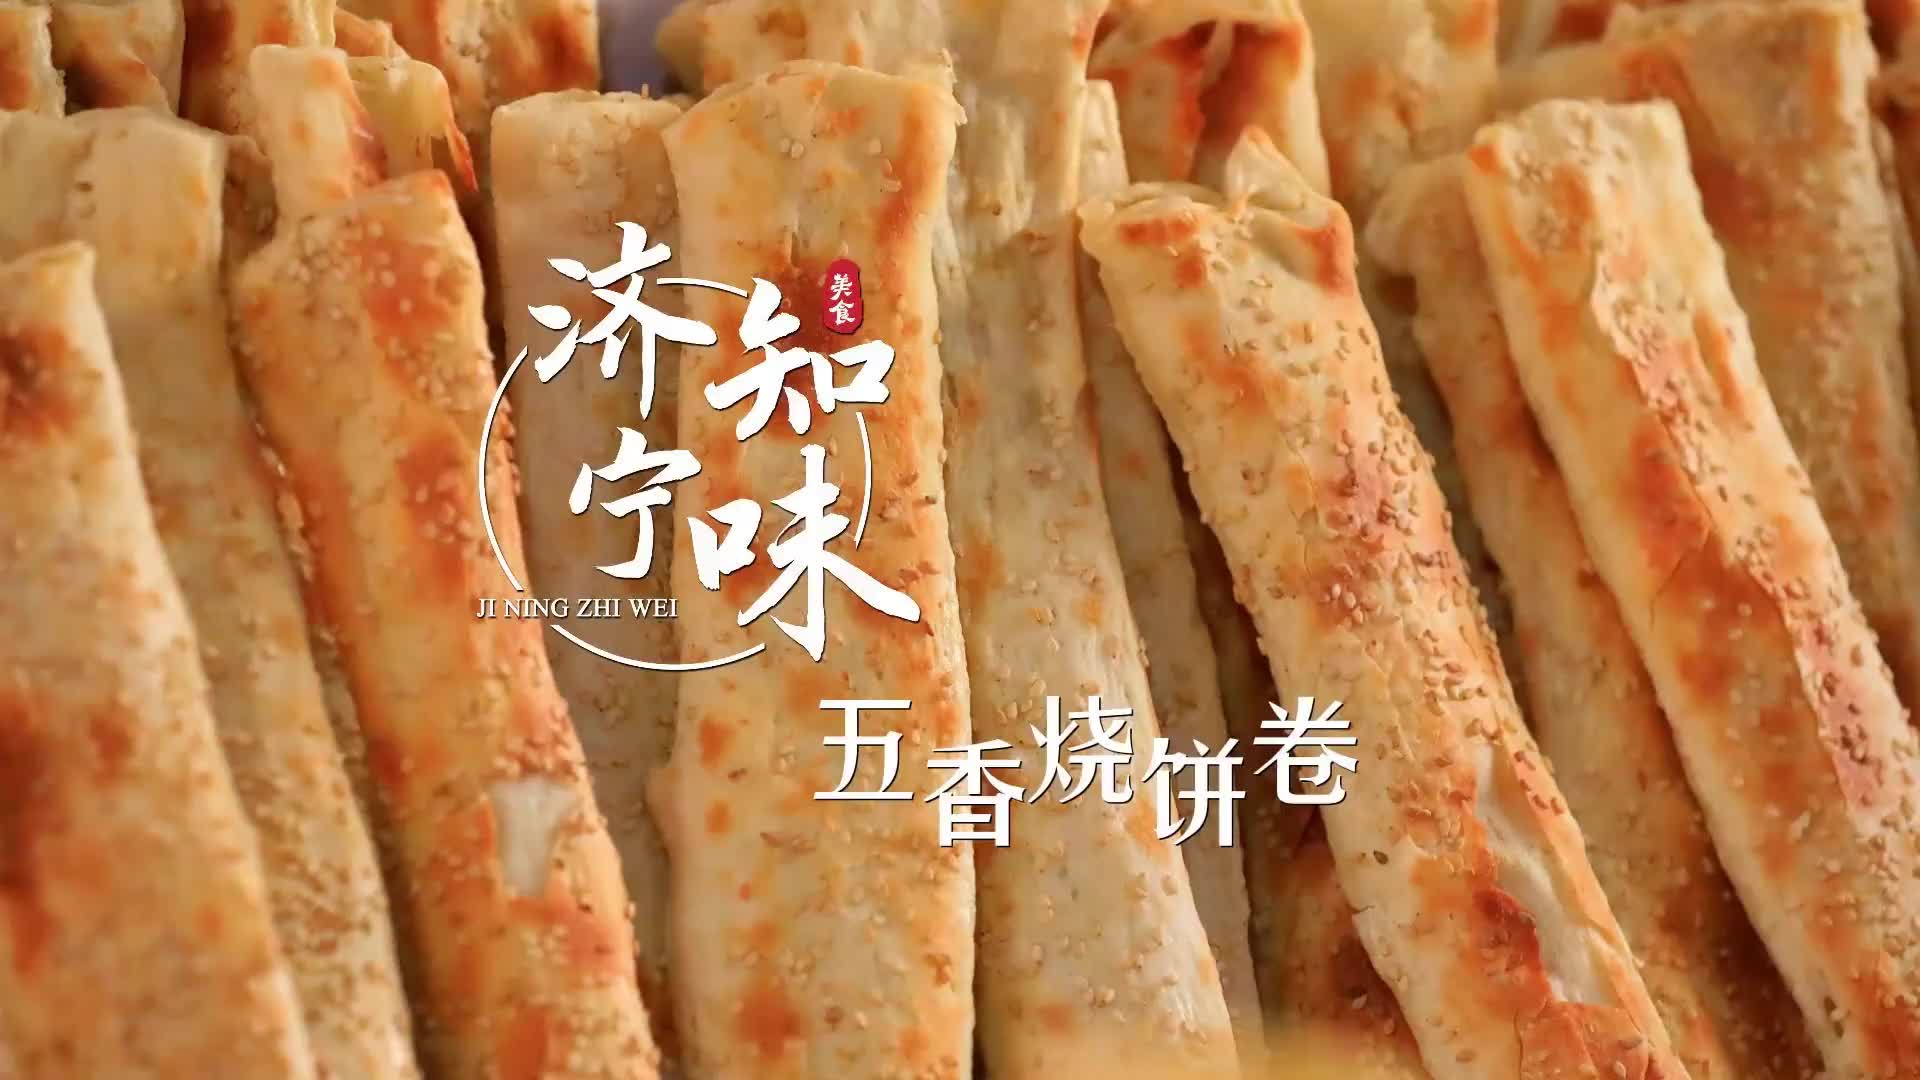 更济宁 | 济宁知味——五香烧饼卷